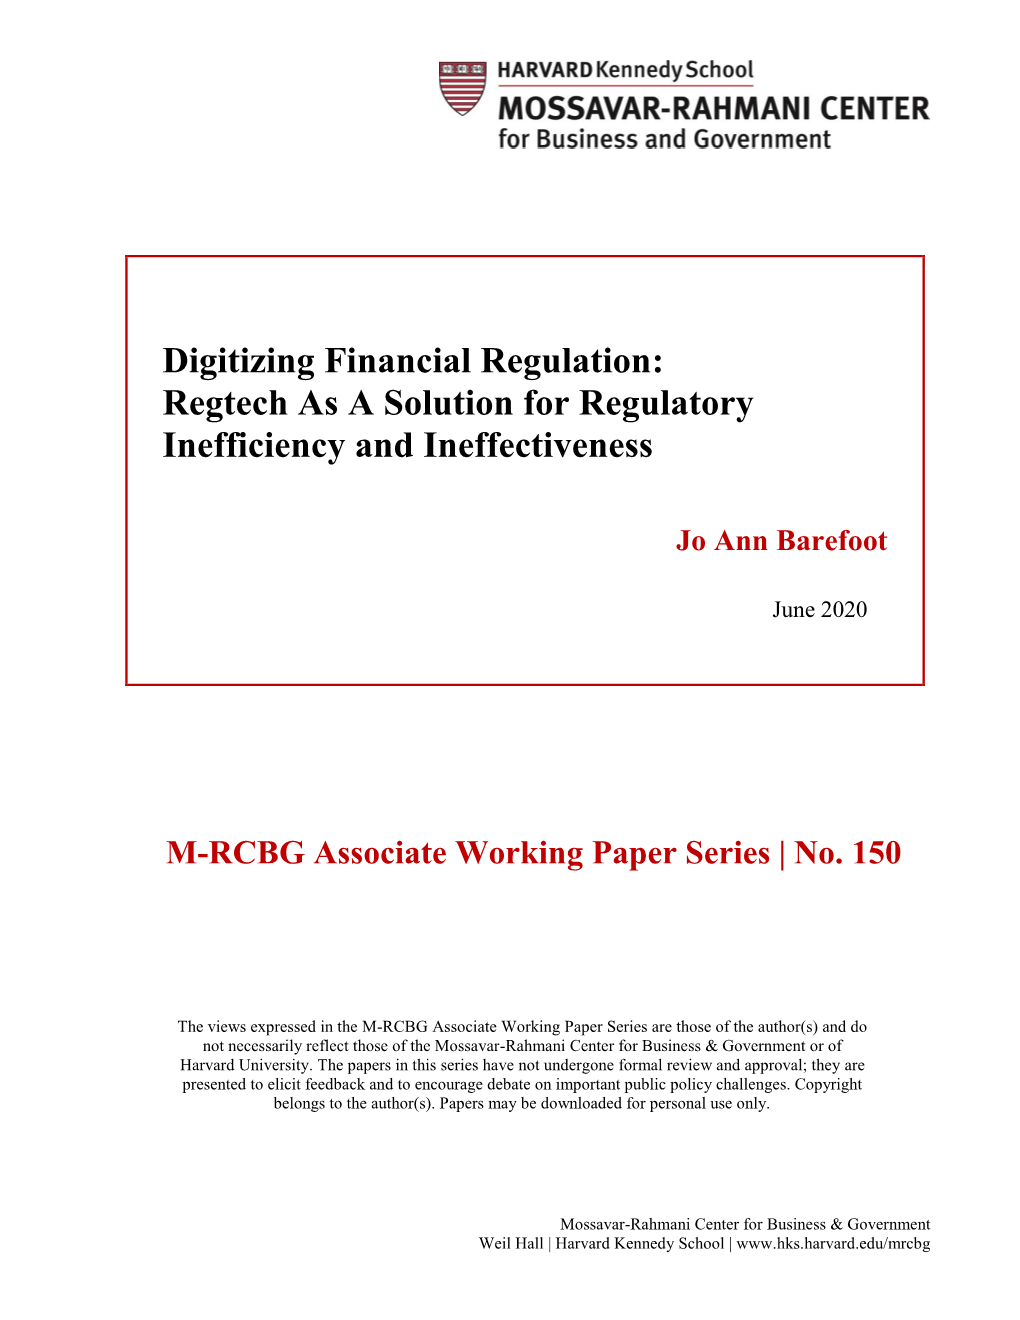 Digitizing Financial Regulation: Regtech As a Solution for Regulatory Inefficiency and Ineffectiveness